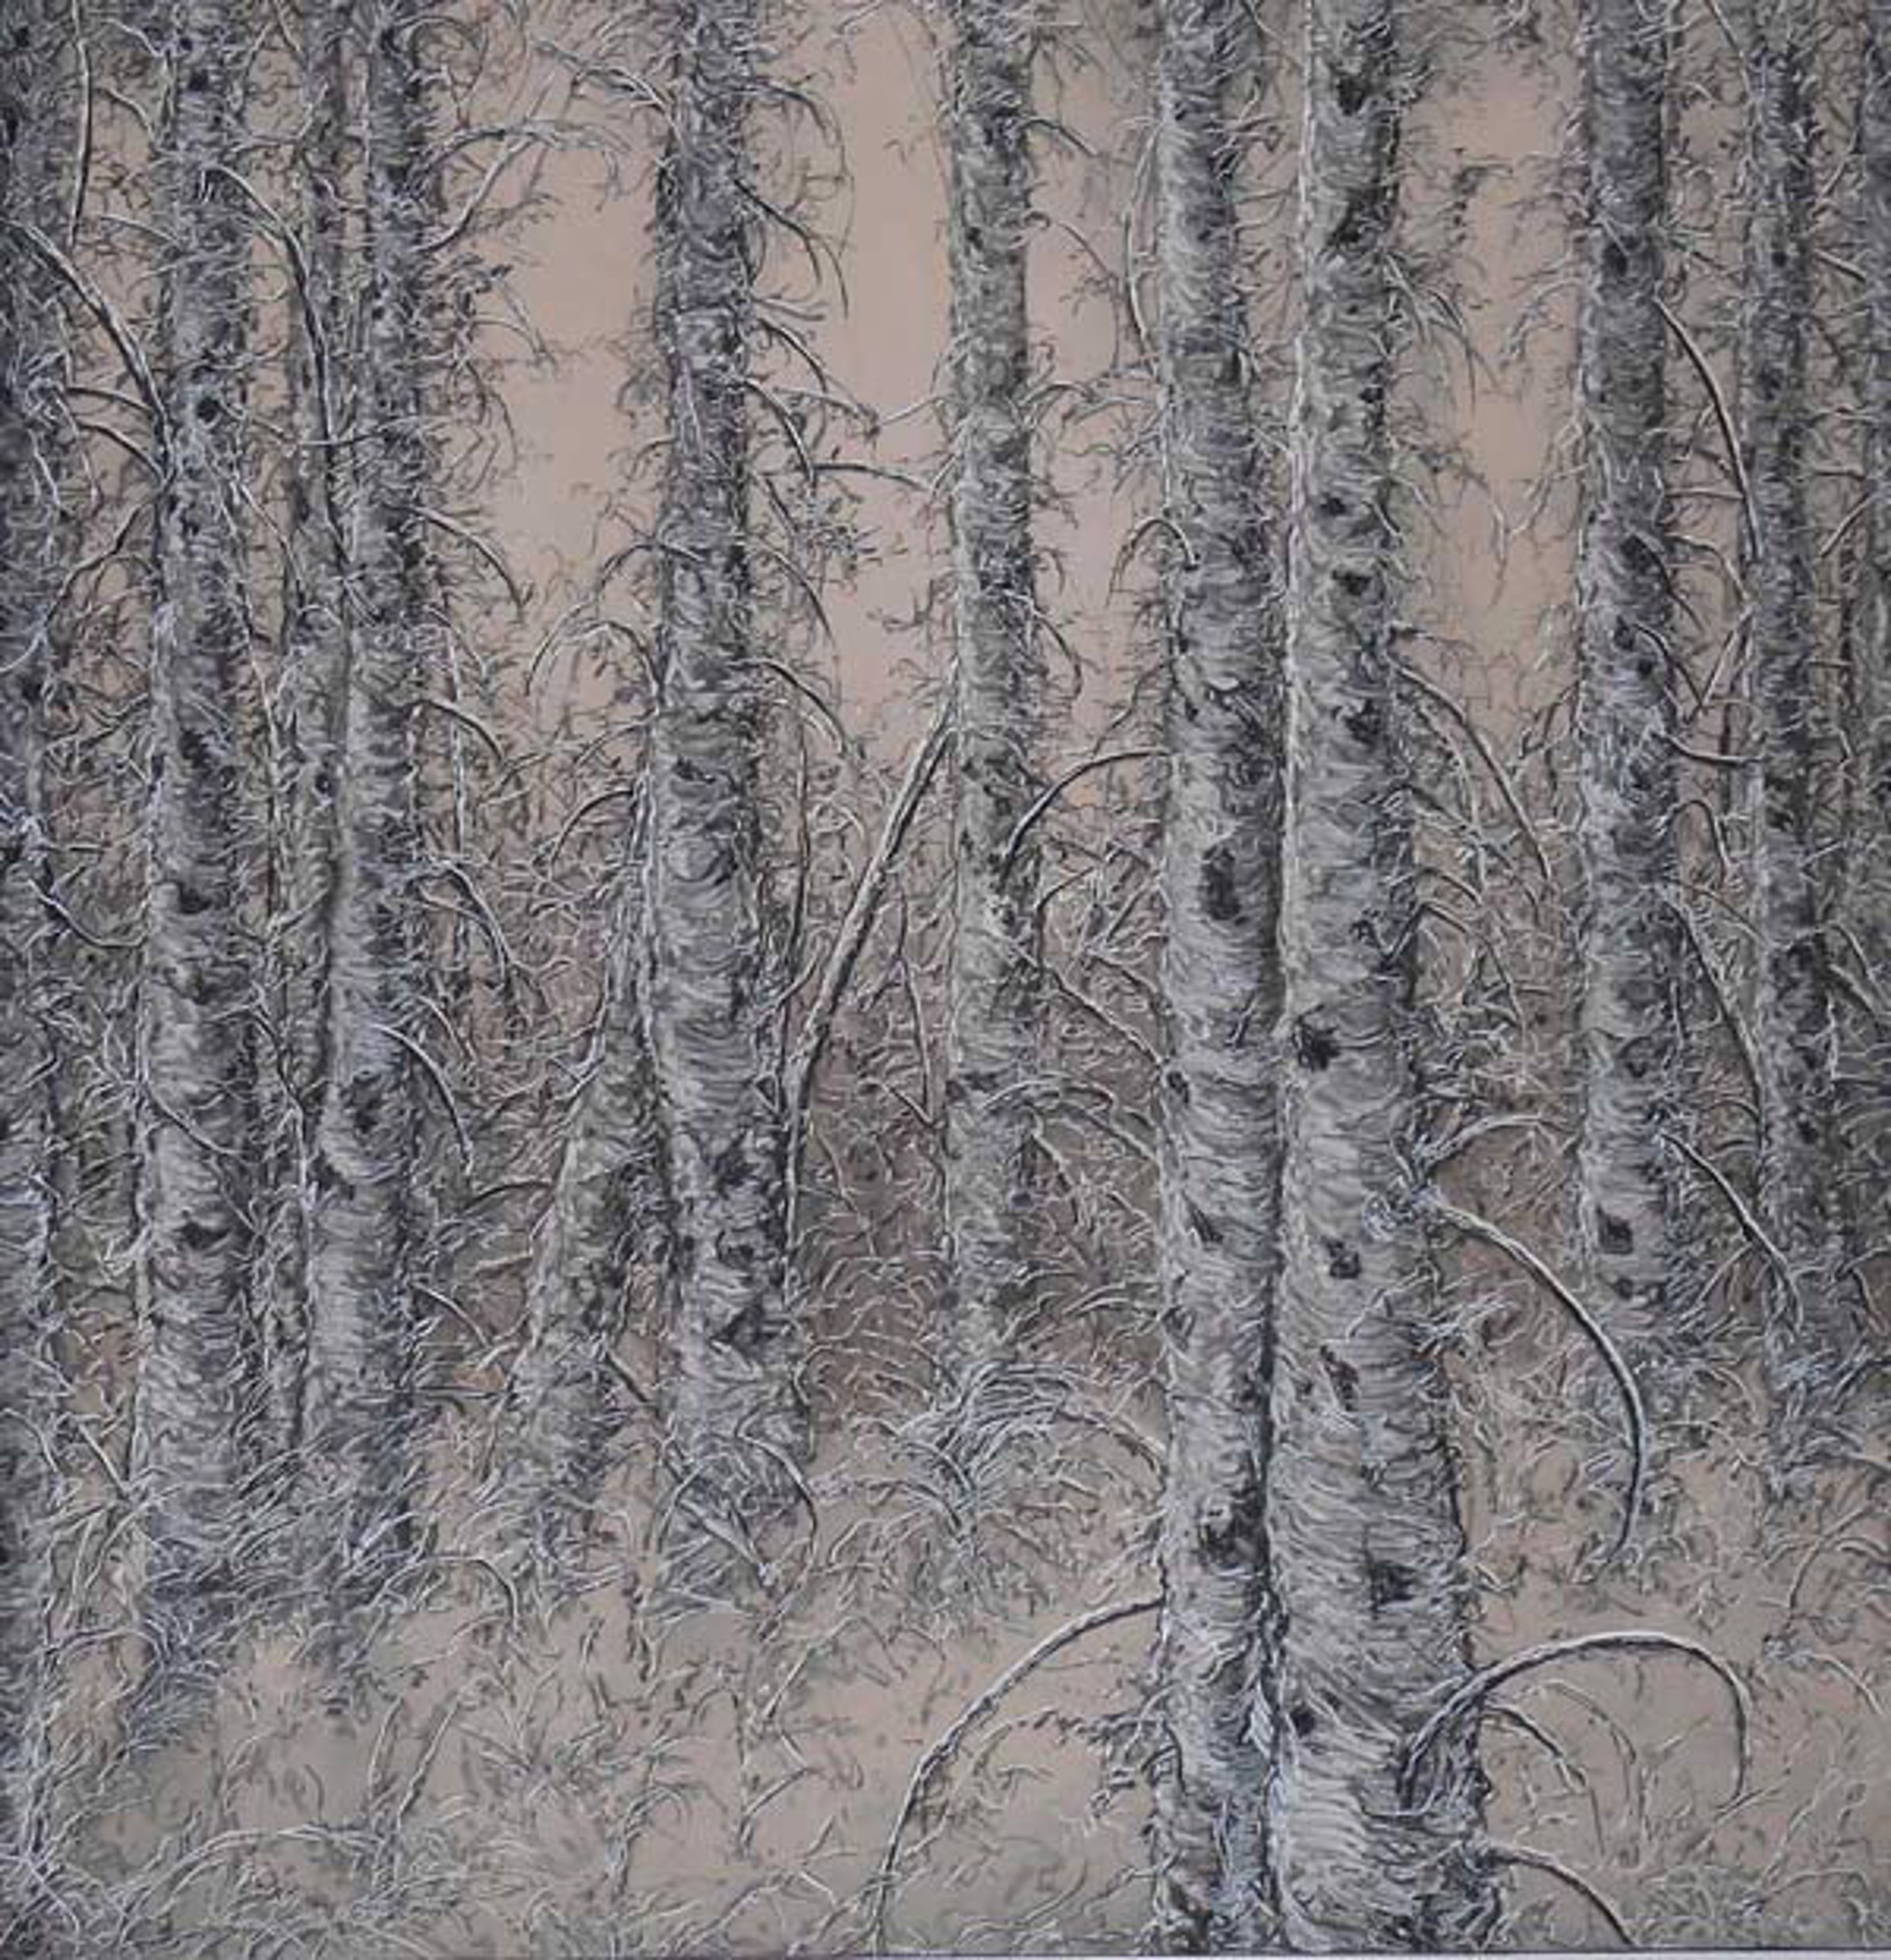 Birch, Winter by Ellen Wagener